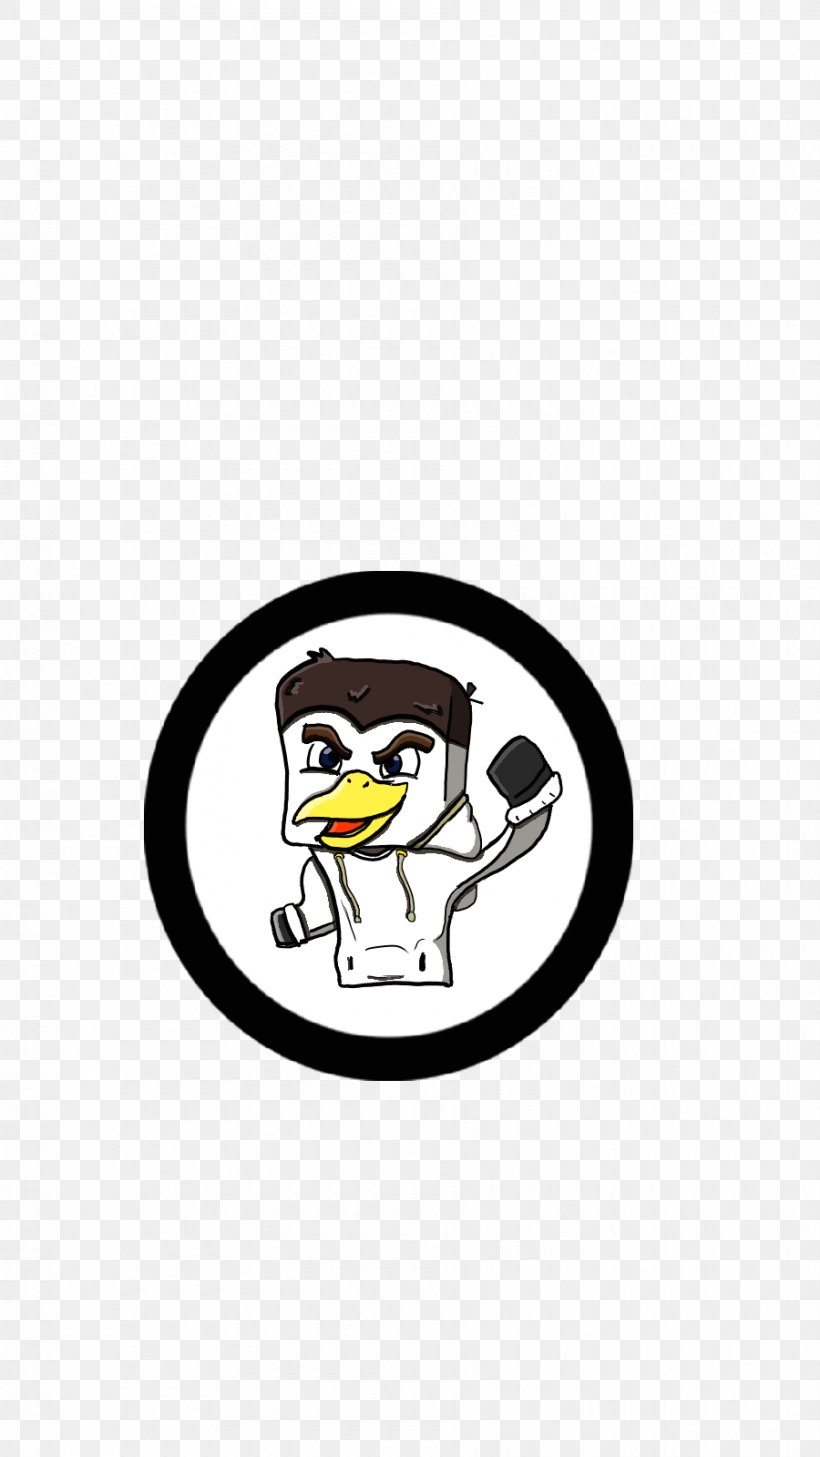 Flightless Bird Logo Headgear Clip Art, PNG, 900x1600px, Flightless Bird, Bird, Brand, Headgear, Logo Download Free